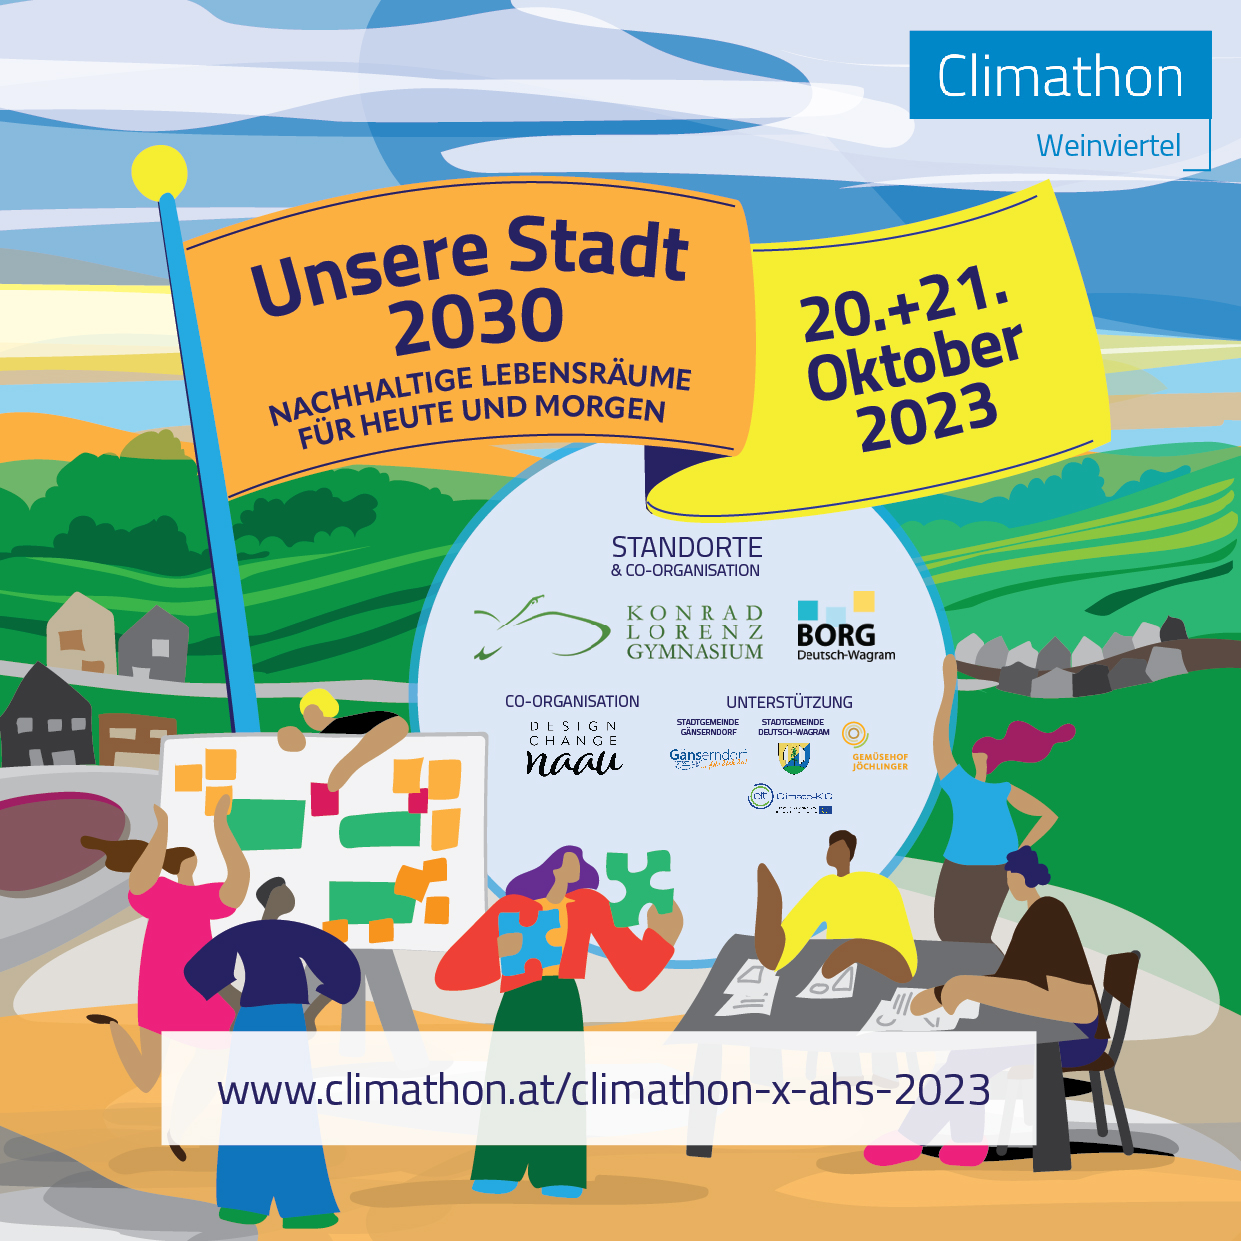 Climathon Weinviertel 2023 Deutsch-Wagram + Gänserndorf